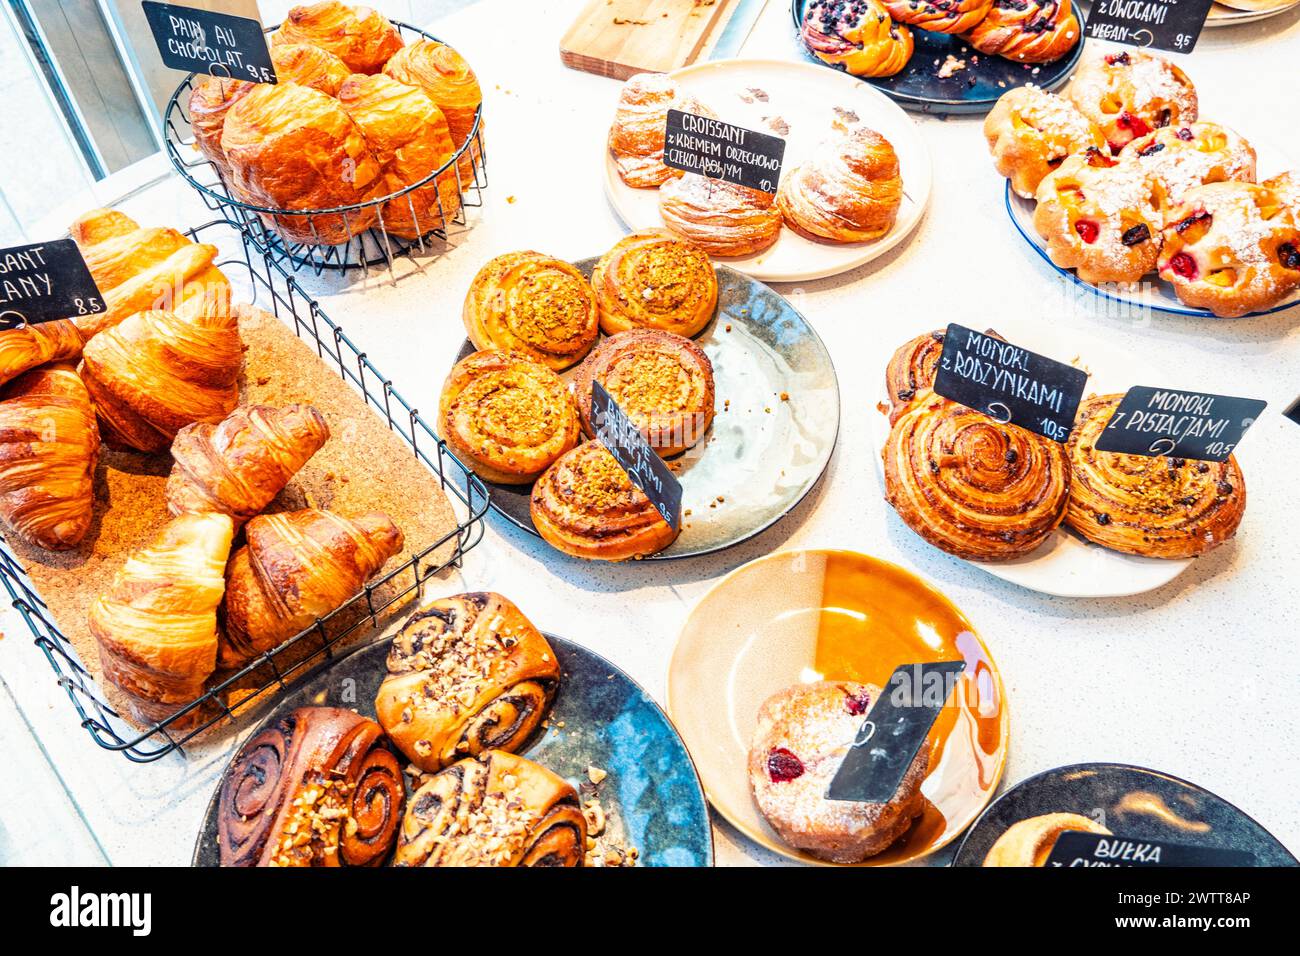 Eine verlockende Auswahl an frisch gebackenem Gebäck in einer gemütlichen Bäckerei. Stockfoto